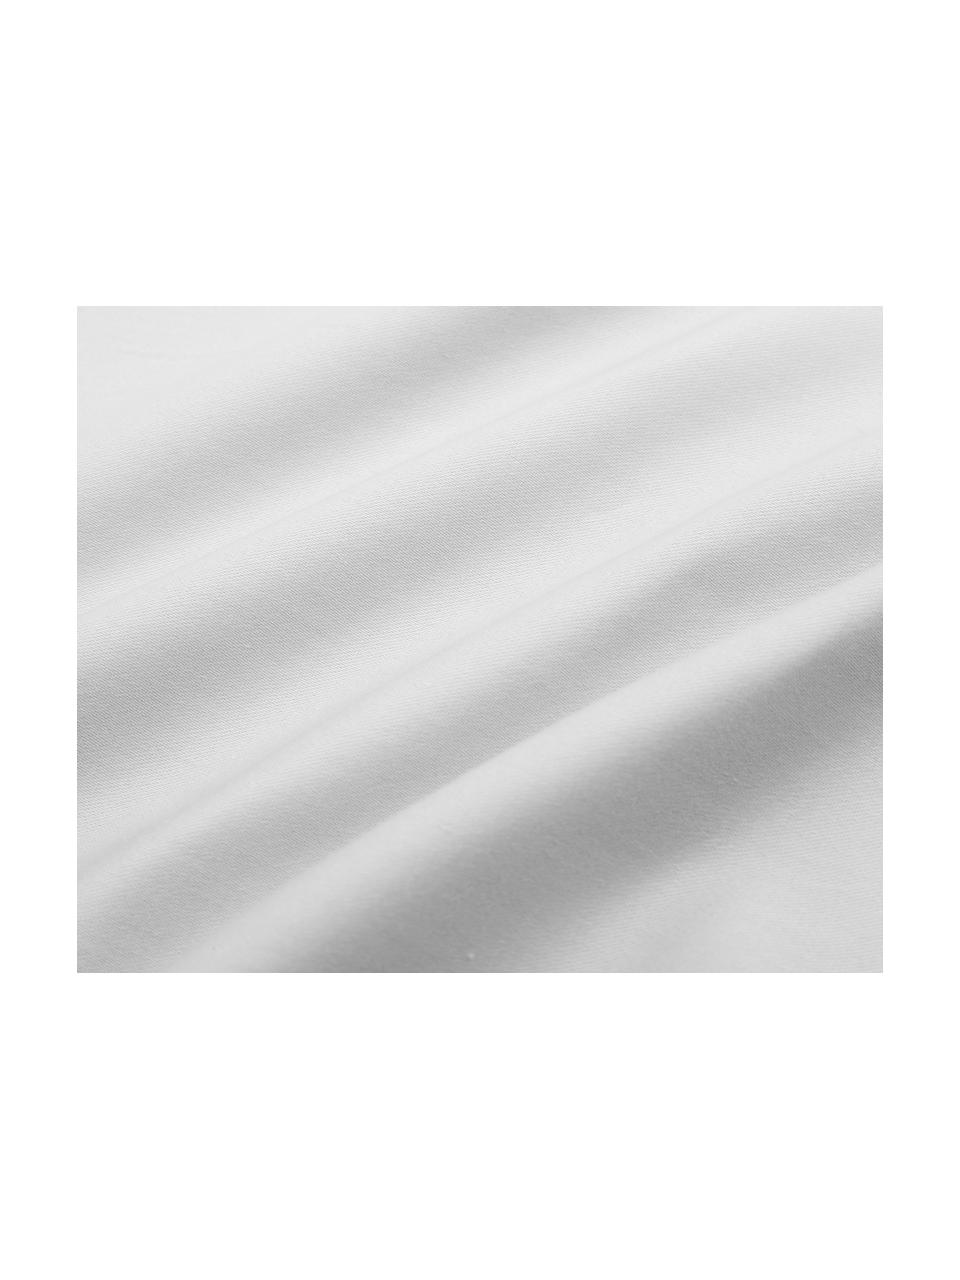 Parure copripiumino in raso di cotone grigio chiaro Premium, Tessuto: raso, leggermente lucido, Grigio chiaro, 200 x 200 cm + 2 federe 50 x 80 cm